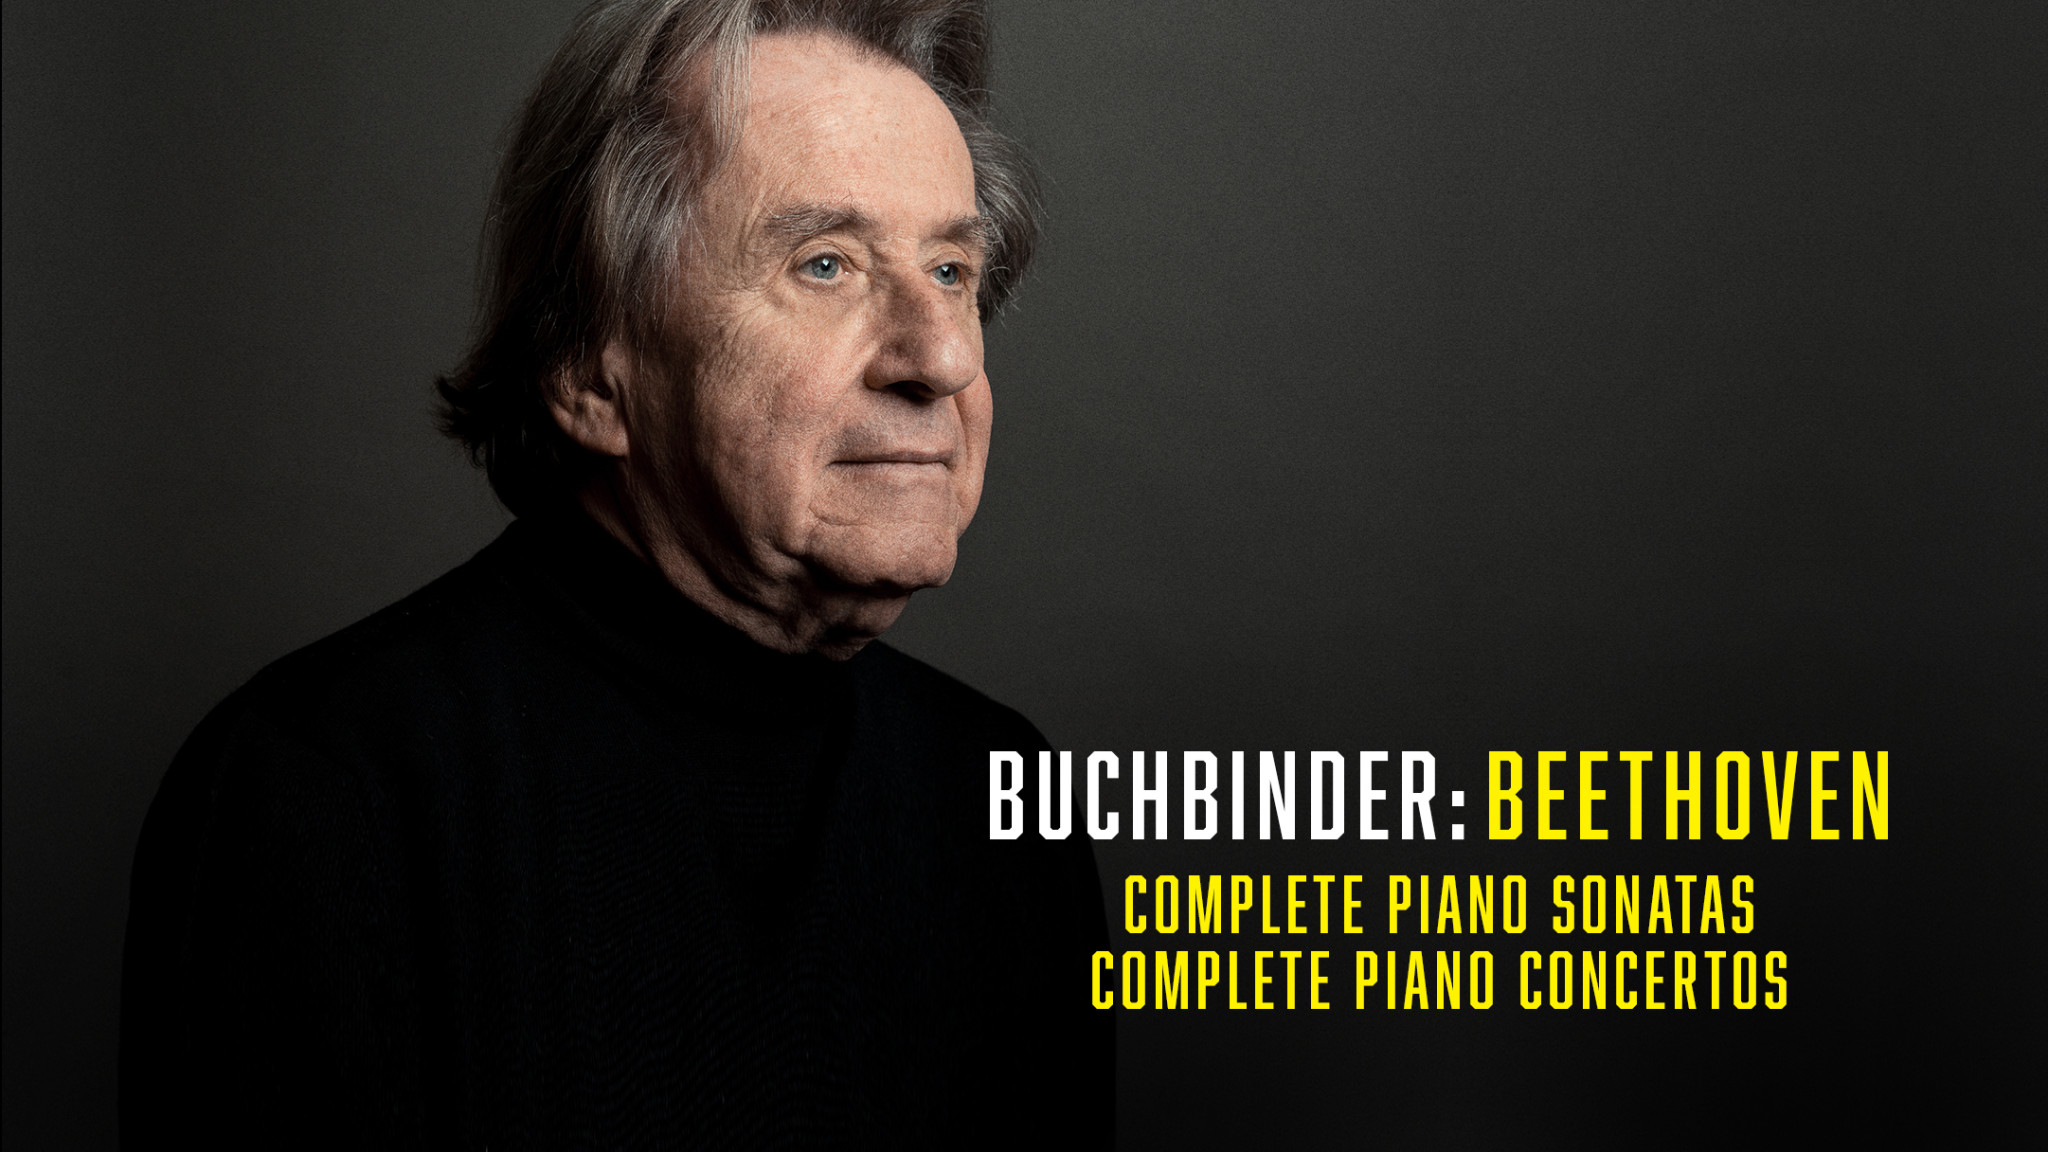 Buchbinder - Beethoven Complete Concertos and Sonatas